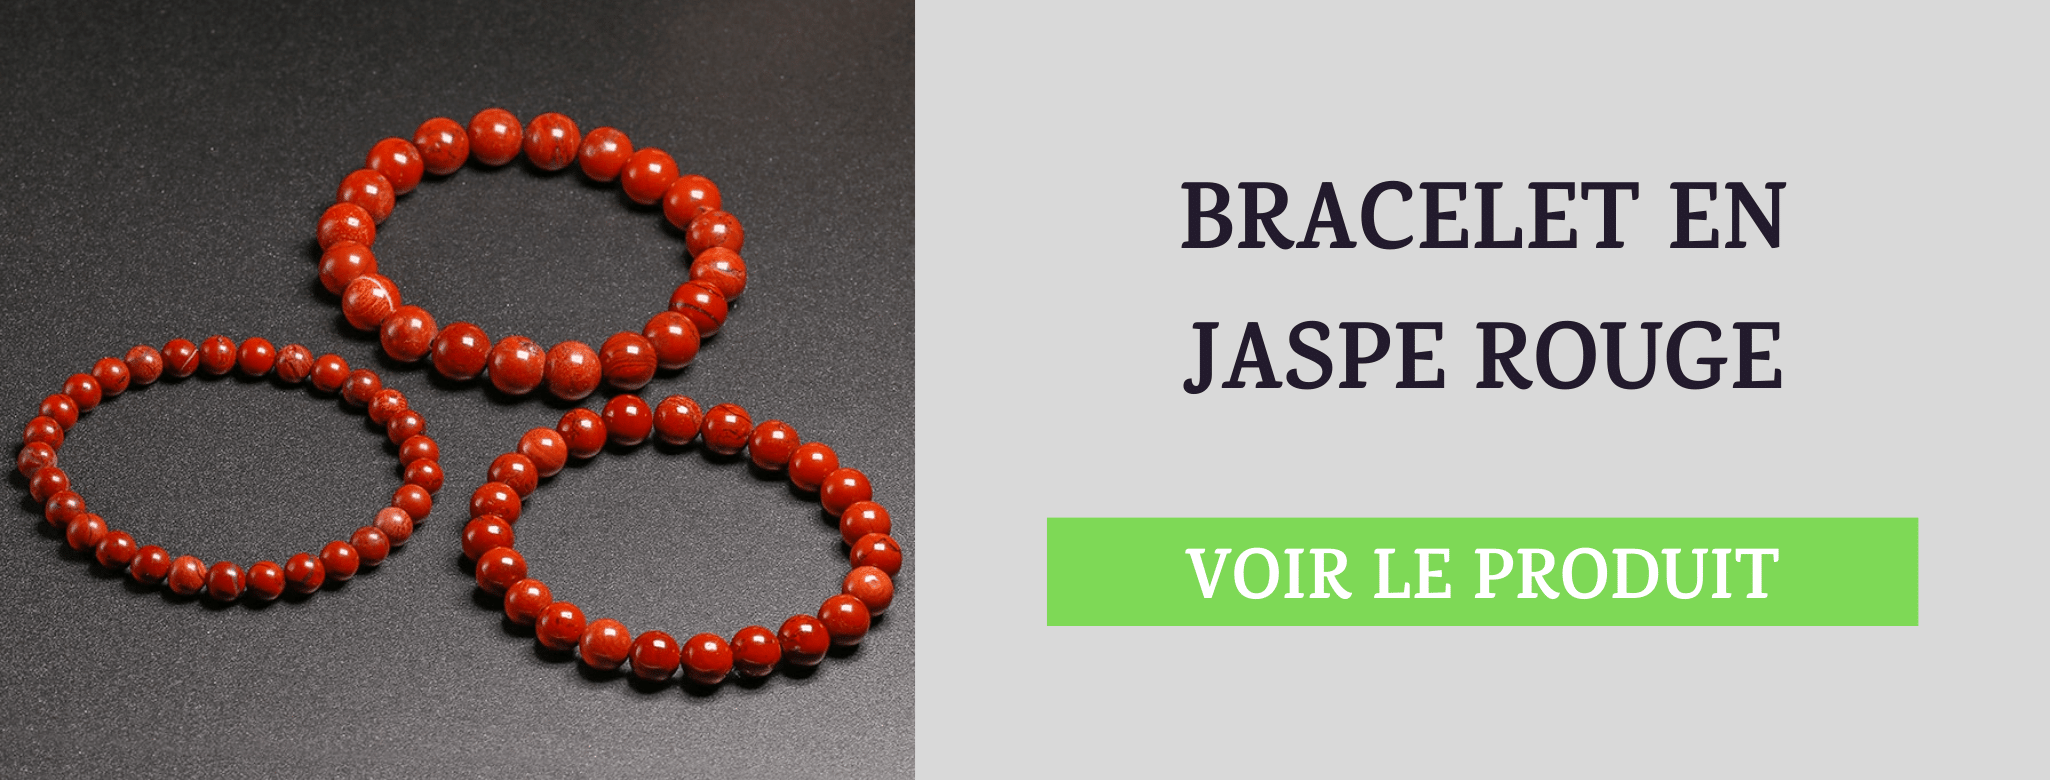 Bracelet Jaspe Rouge Renouveau